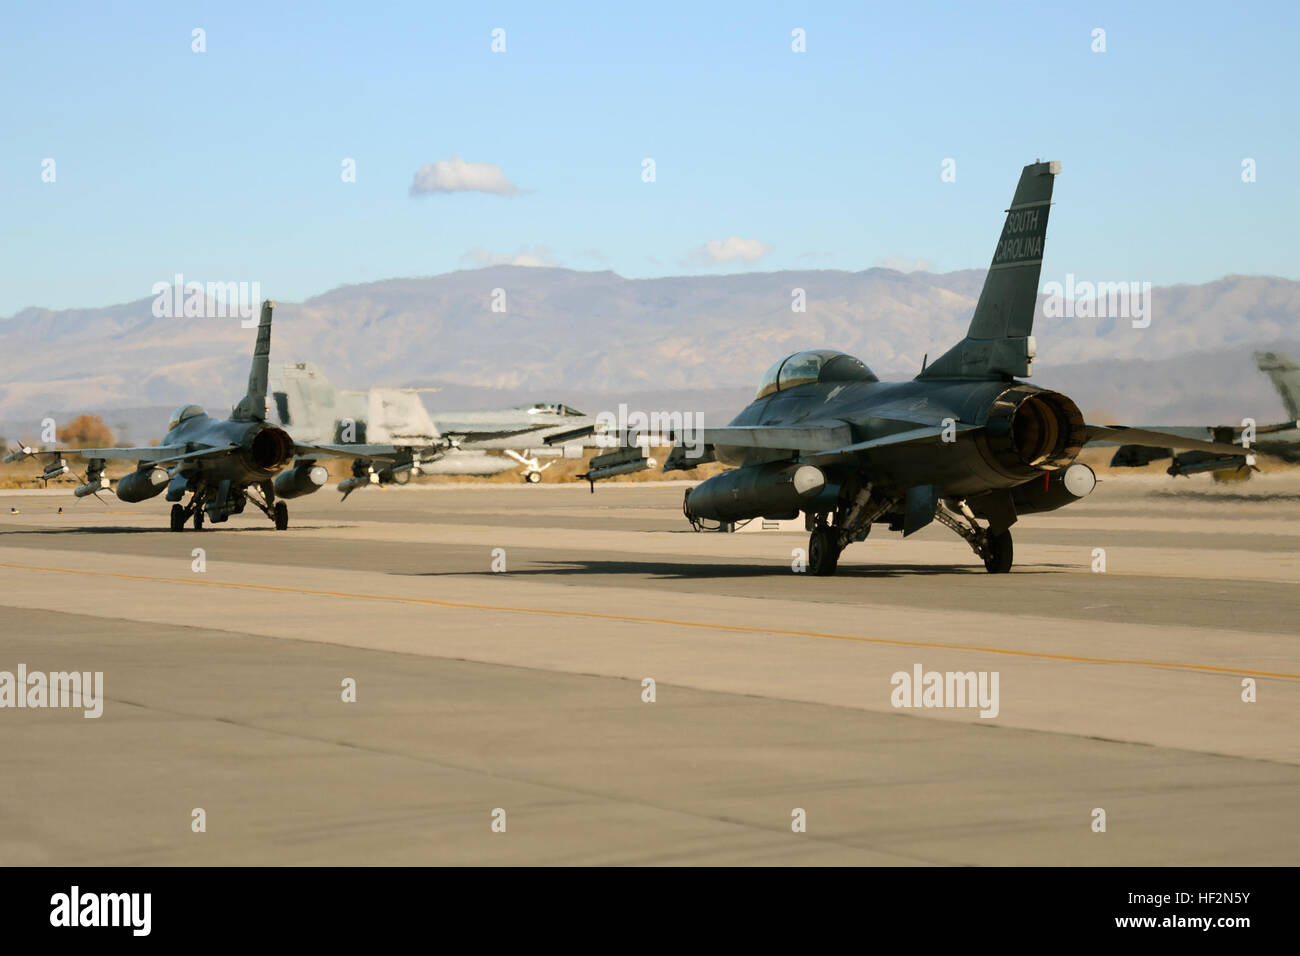 Los pilotos de combate de la Fuerza Aérea de los EE.UU. a partir de la 157ª Fighter Squadron en la base de la Guardia Nacional conjunto McEntire, S.C., espere en la línea de vuelo a taxi y lanzar F-16 Falcon de cazas de combate en una misión de entrenamiento desde la Estación Aeronaval Fallon, Nevada, 13 de noviembre de 2014. Swamp Fox aviadores de la 169ª Ala de caza y la Guardia Nacional Aérea de Carolina del Sur están desplegadas a NAS Fallon al apoyo Naval Air Wing uno con pre-despliegue de aviones de combate, integrando la formación F-16's de supresión de las defensas aéreas del enemigo (SEAD) capacidades con los pilotos de combate de la Marina de los EE.UU. (Ee.Uu. Guardia Nacional Aérea photo by Tech. El sargento Foto de stock